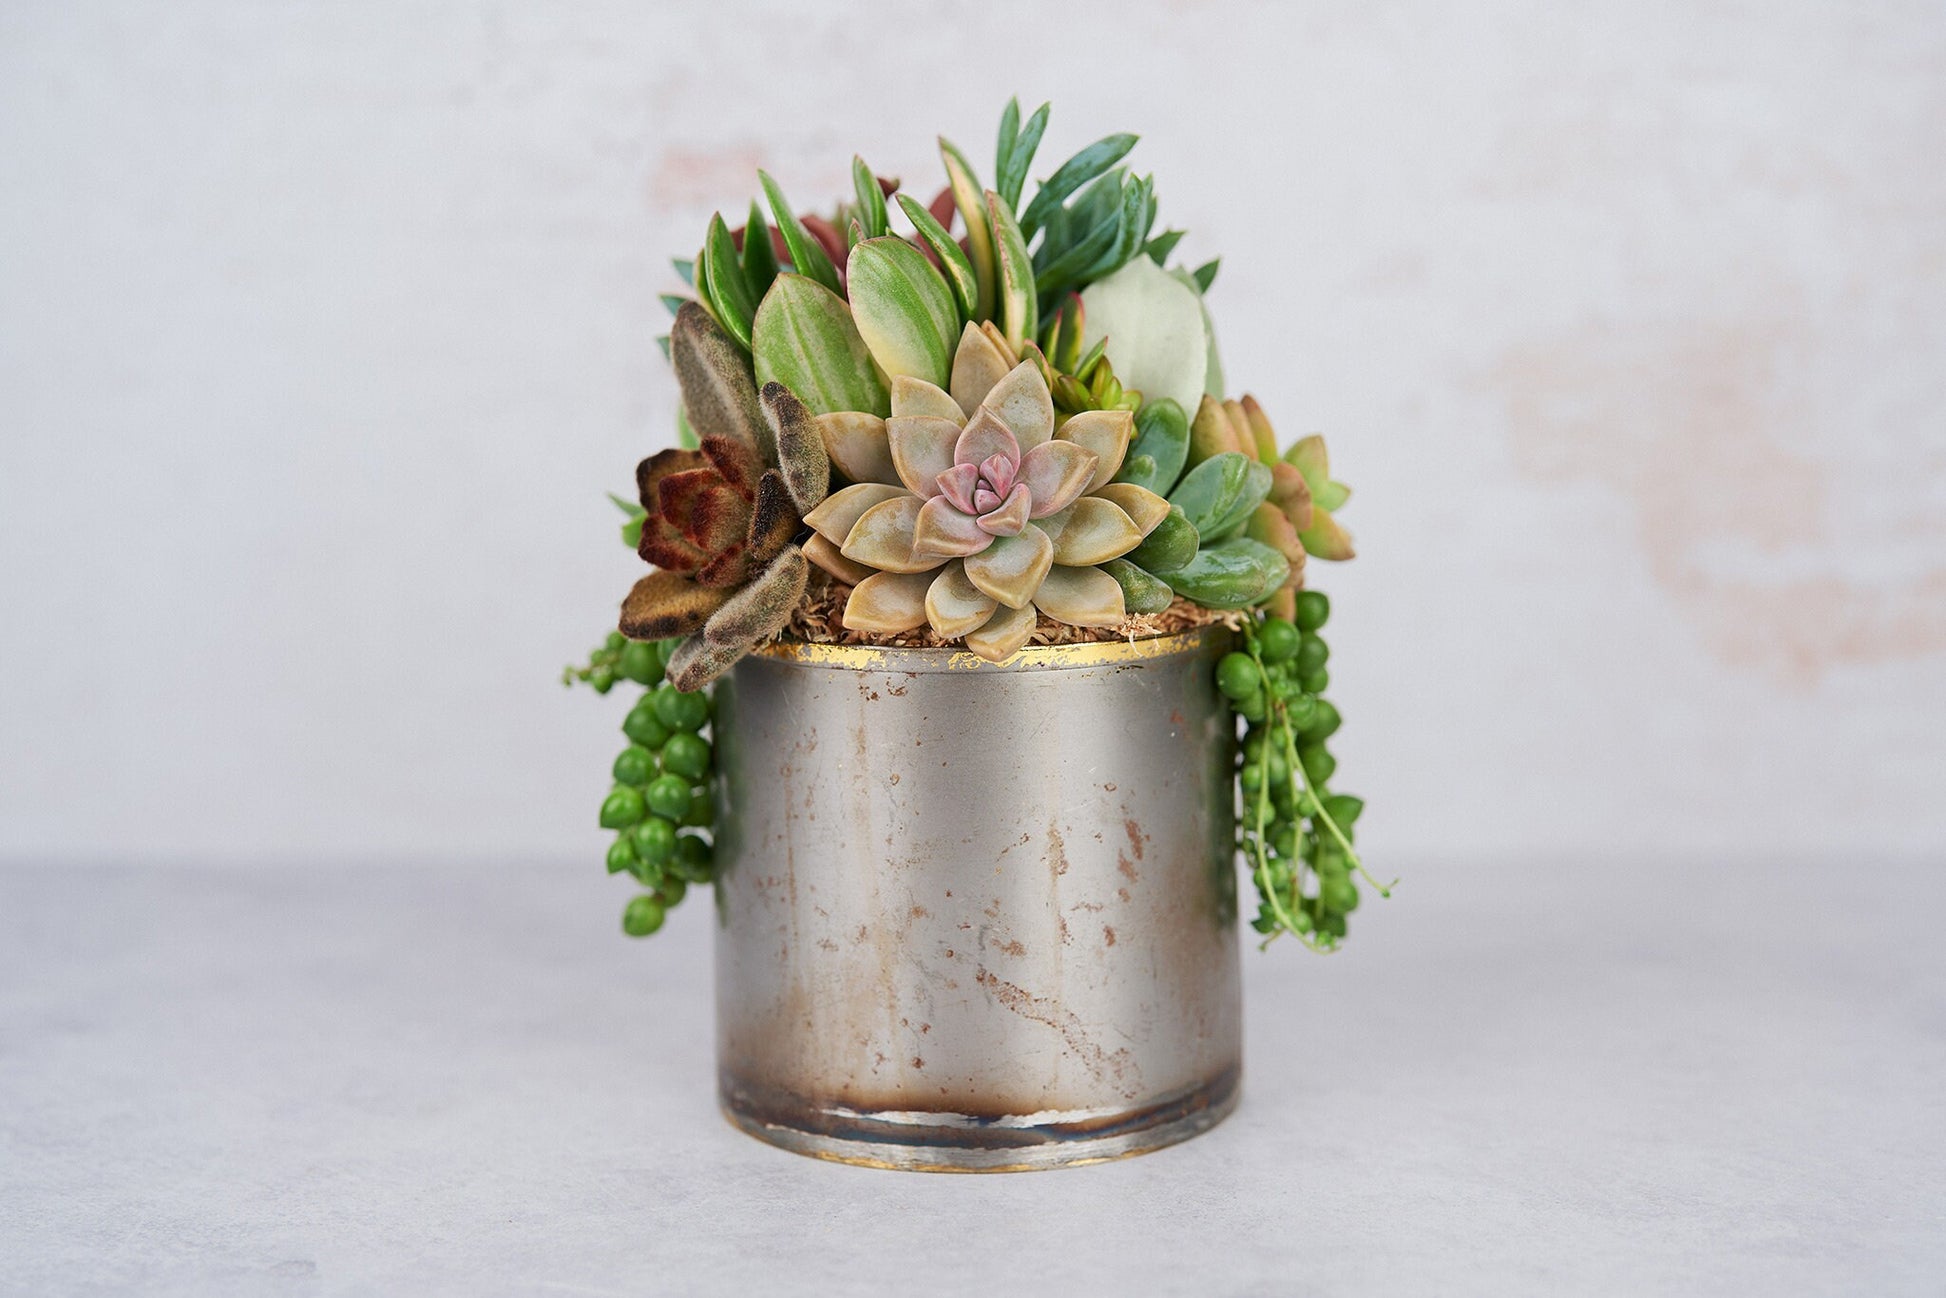 Medium Industrial Metal Succulent Arrangement Planter: Modern Living Succulent Gift, Centerpiece for Weddings & Events, Housewarming Gift